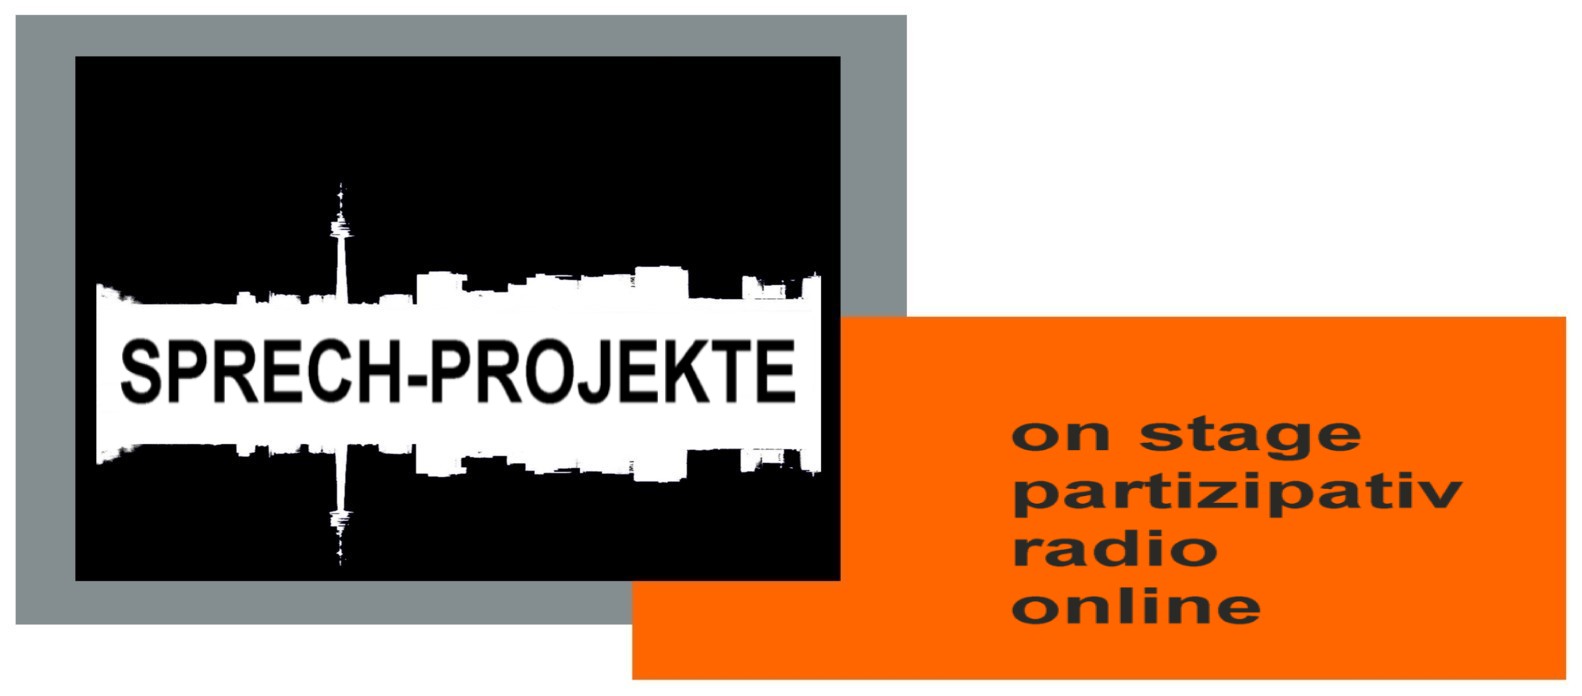 SPRECH_projekte / on stage, partizipativ, radio, online